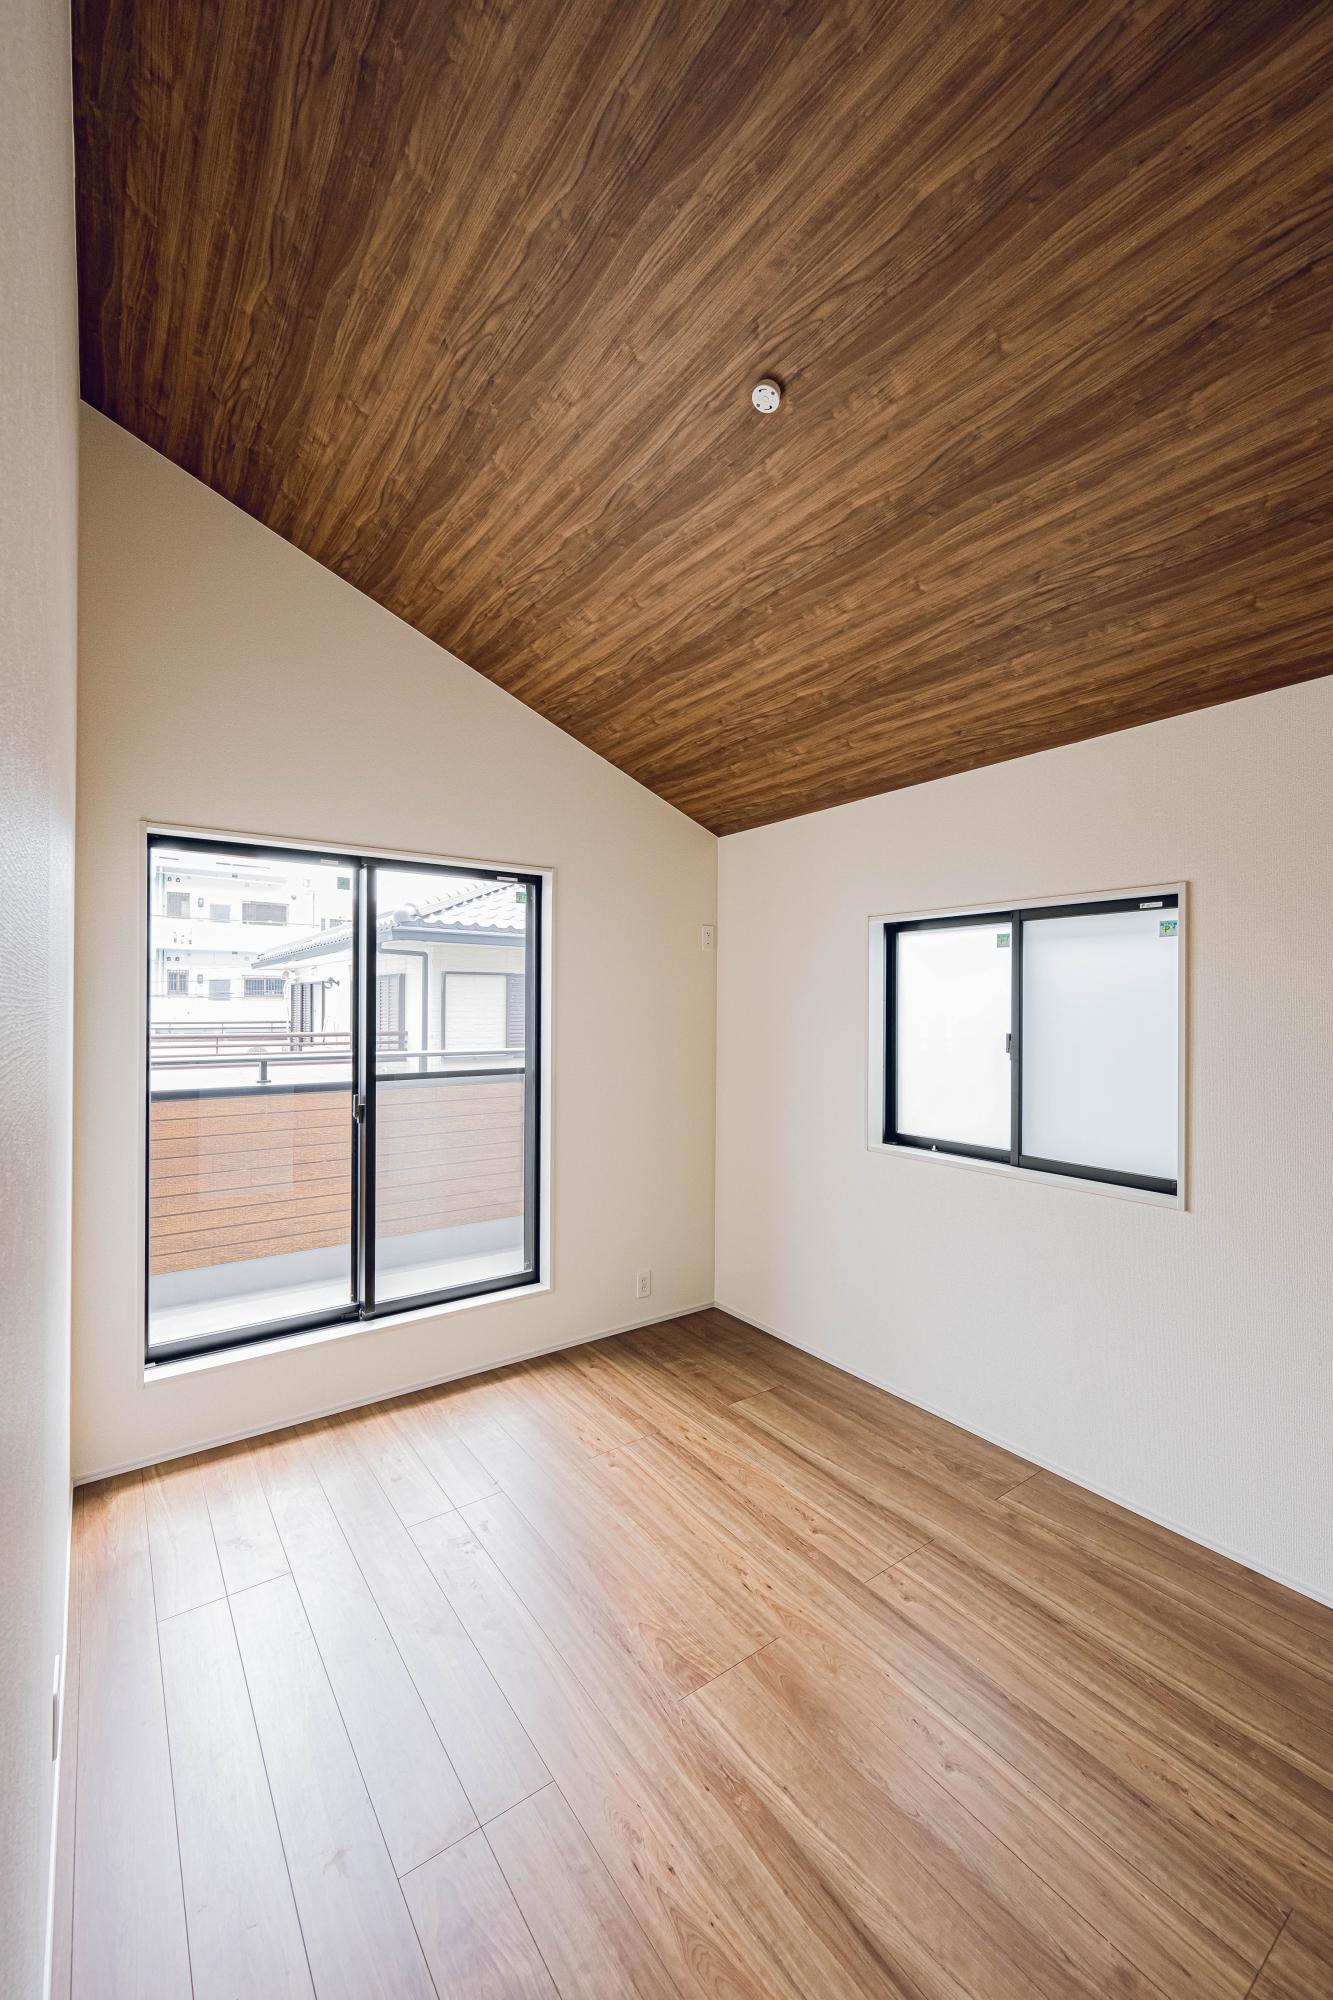 2号棟:洋室6.0帖　勾配天井　同じ面積の部屋であっても、勾配天井を用いている部屋は自然と視線が上部に抜けるため、広々とした空間を感じることができます。